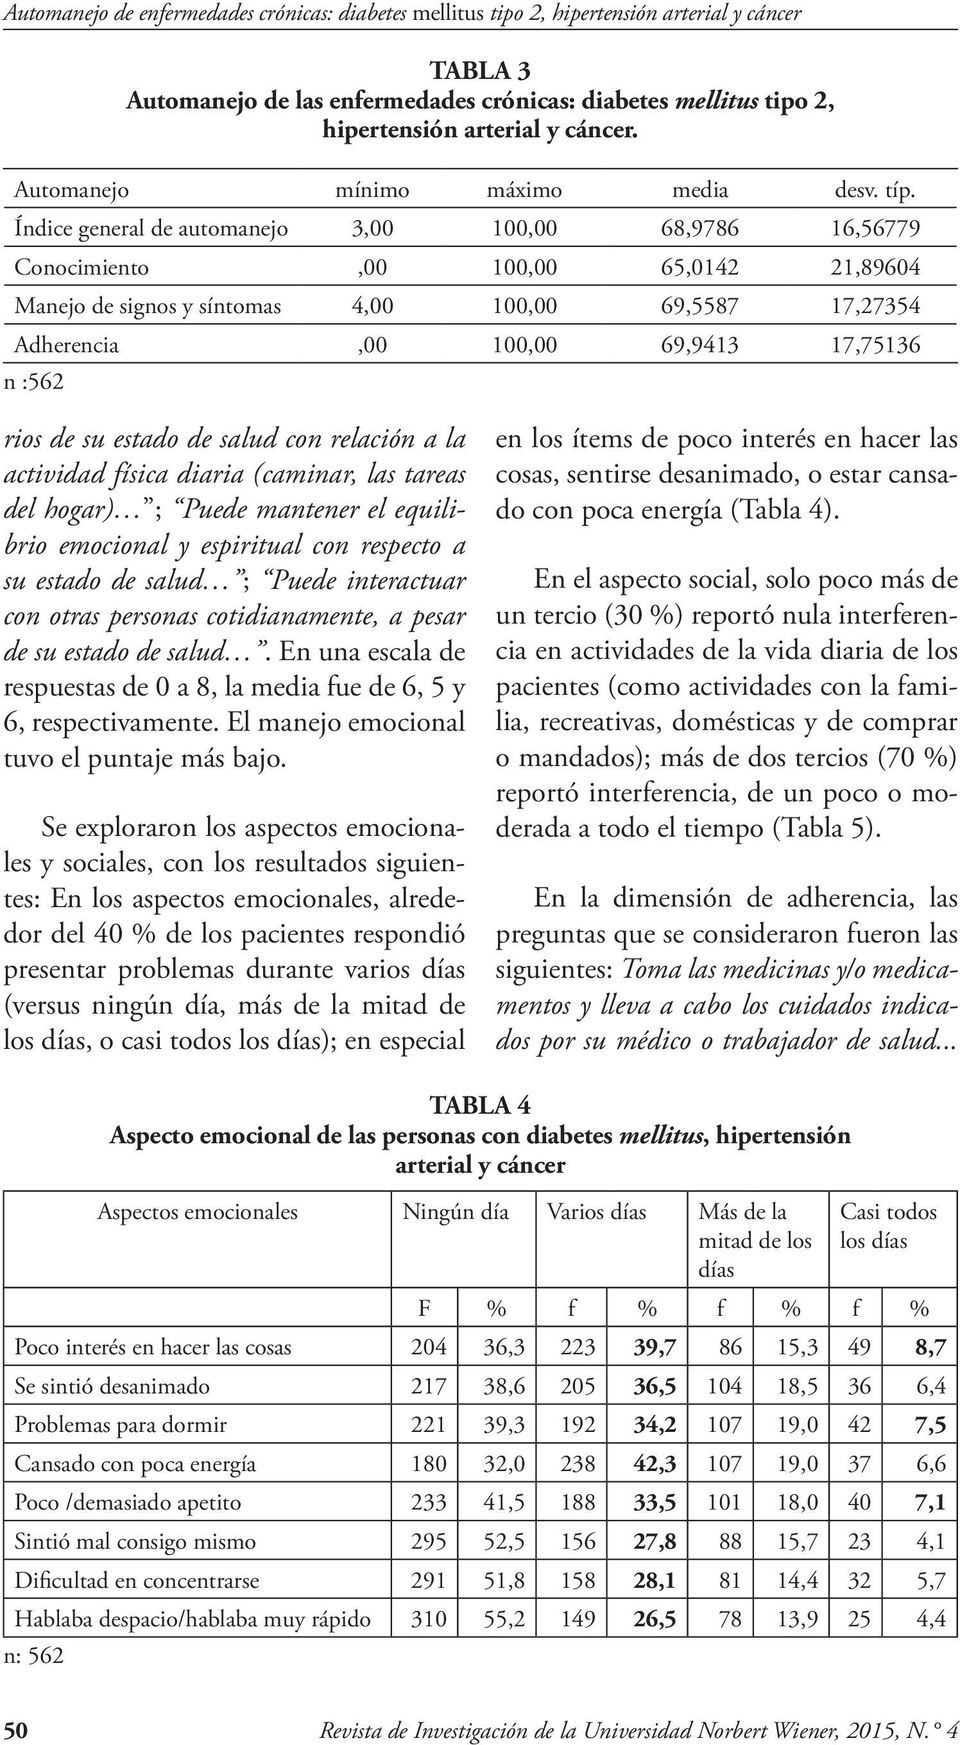 TABLA 3 Automanejo de las enfermedades crónicas: diabetes mellitus tipo 2, hipertensión arterial y cáncer.